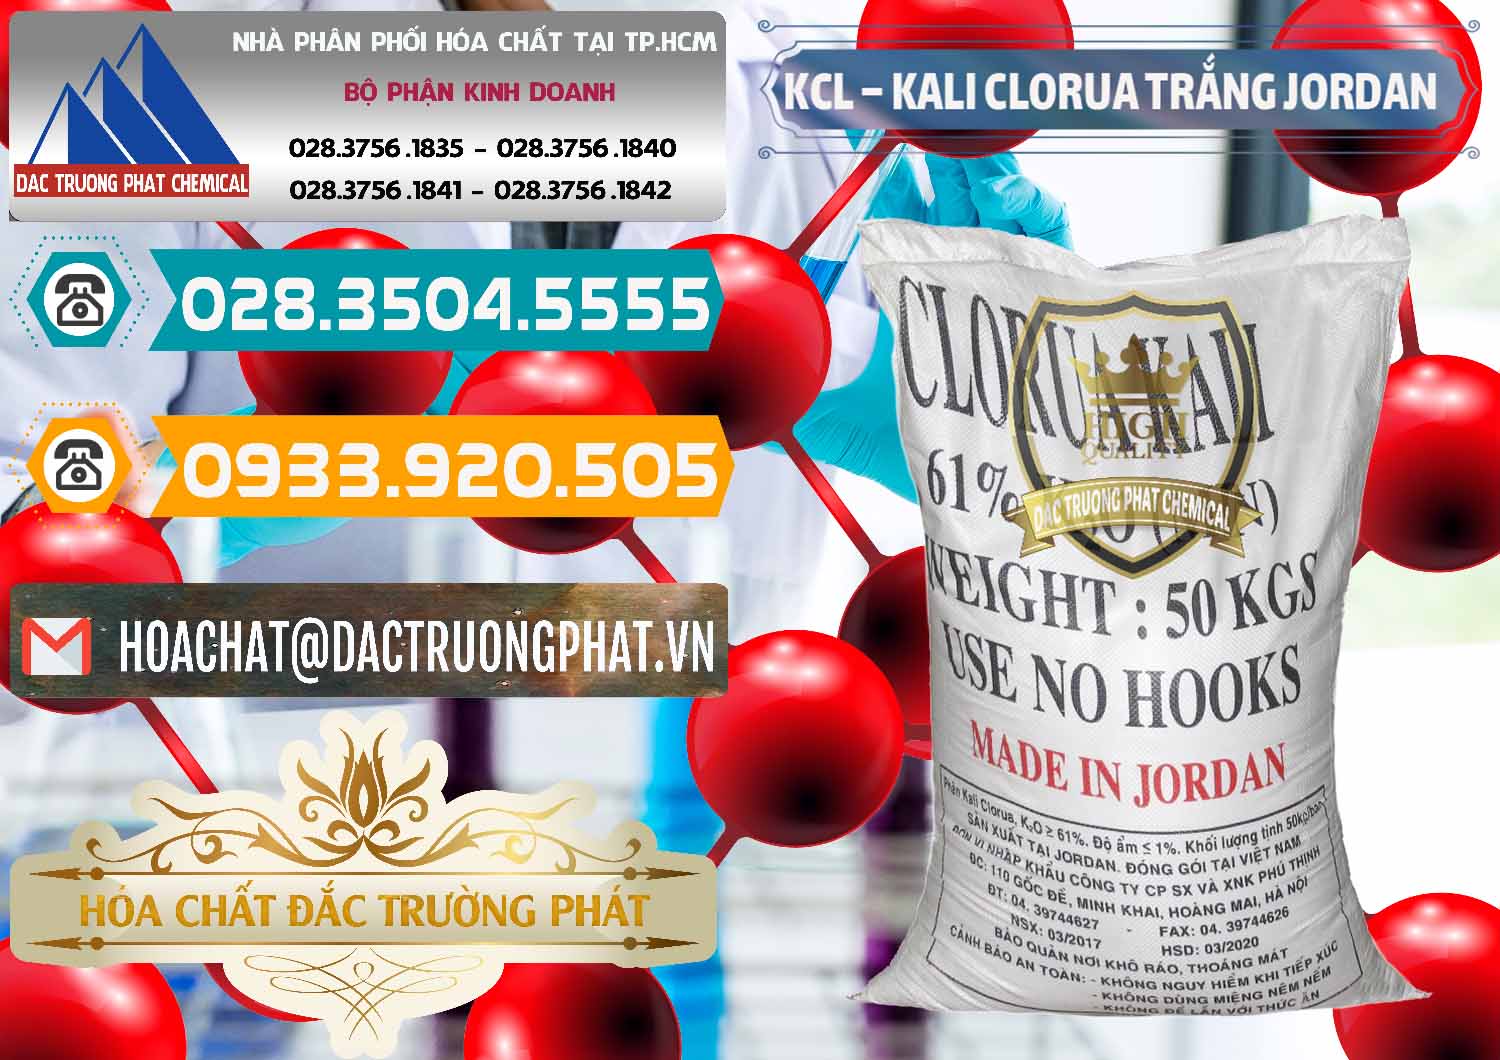 Cty chuyên phân phối - bán KCL – Kali Clorua Trắng Jordan - 0088 - Đơn vị nhập khẩu & phân phối hóa chất tại TP.HCM - congtyhoachat.vn